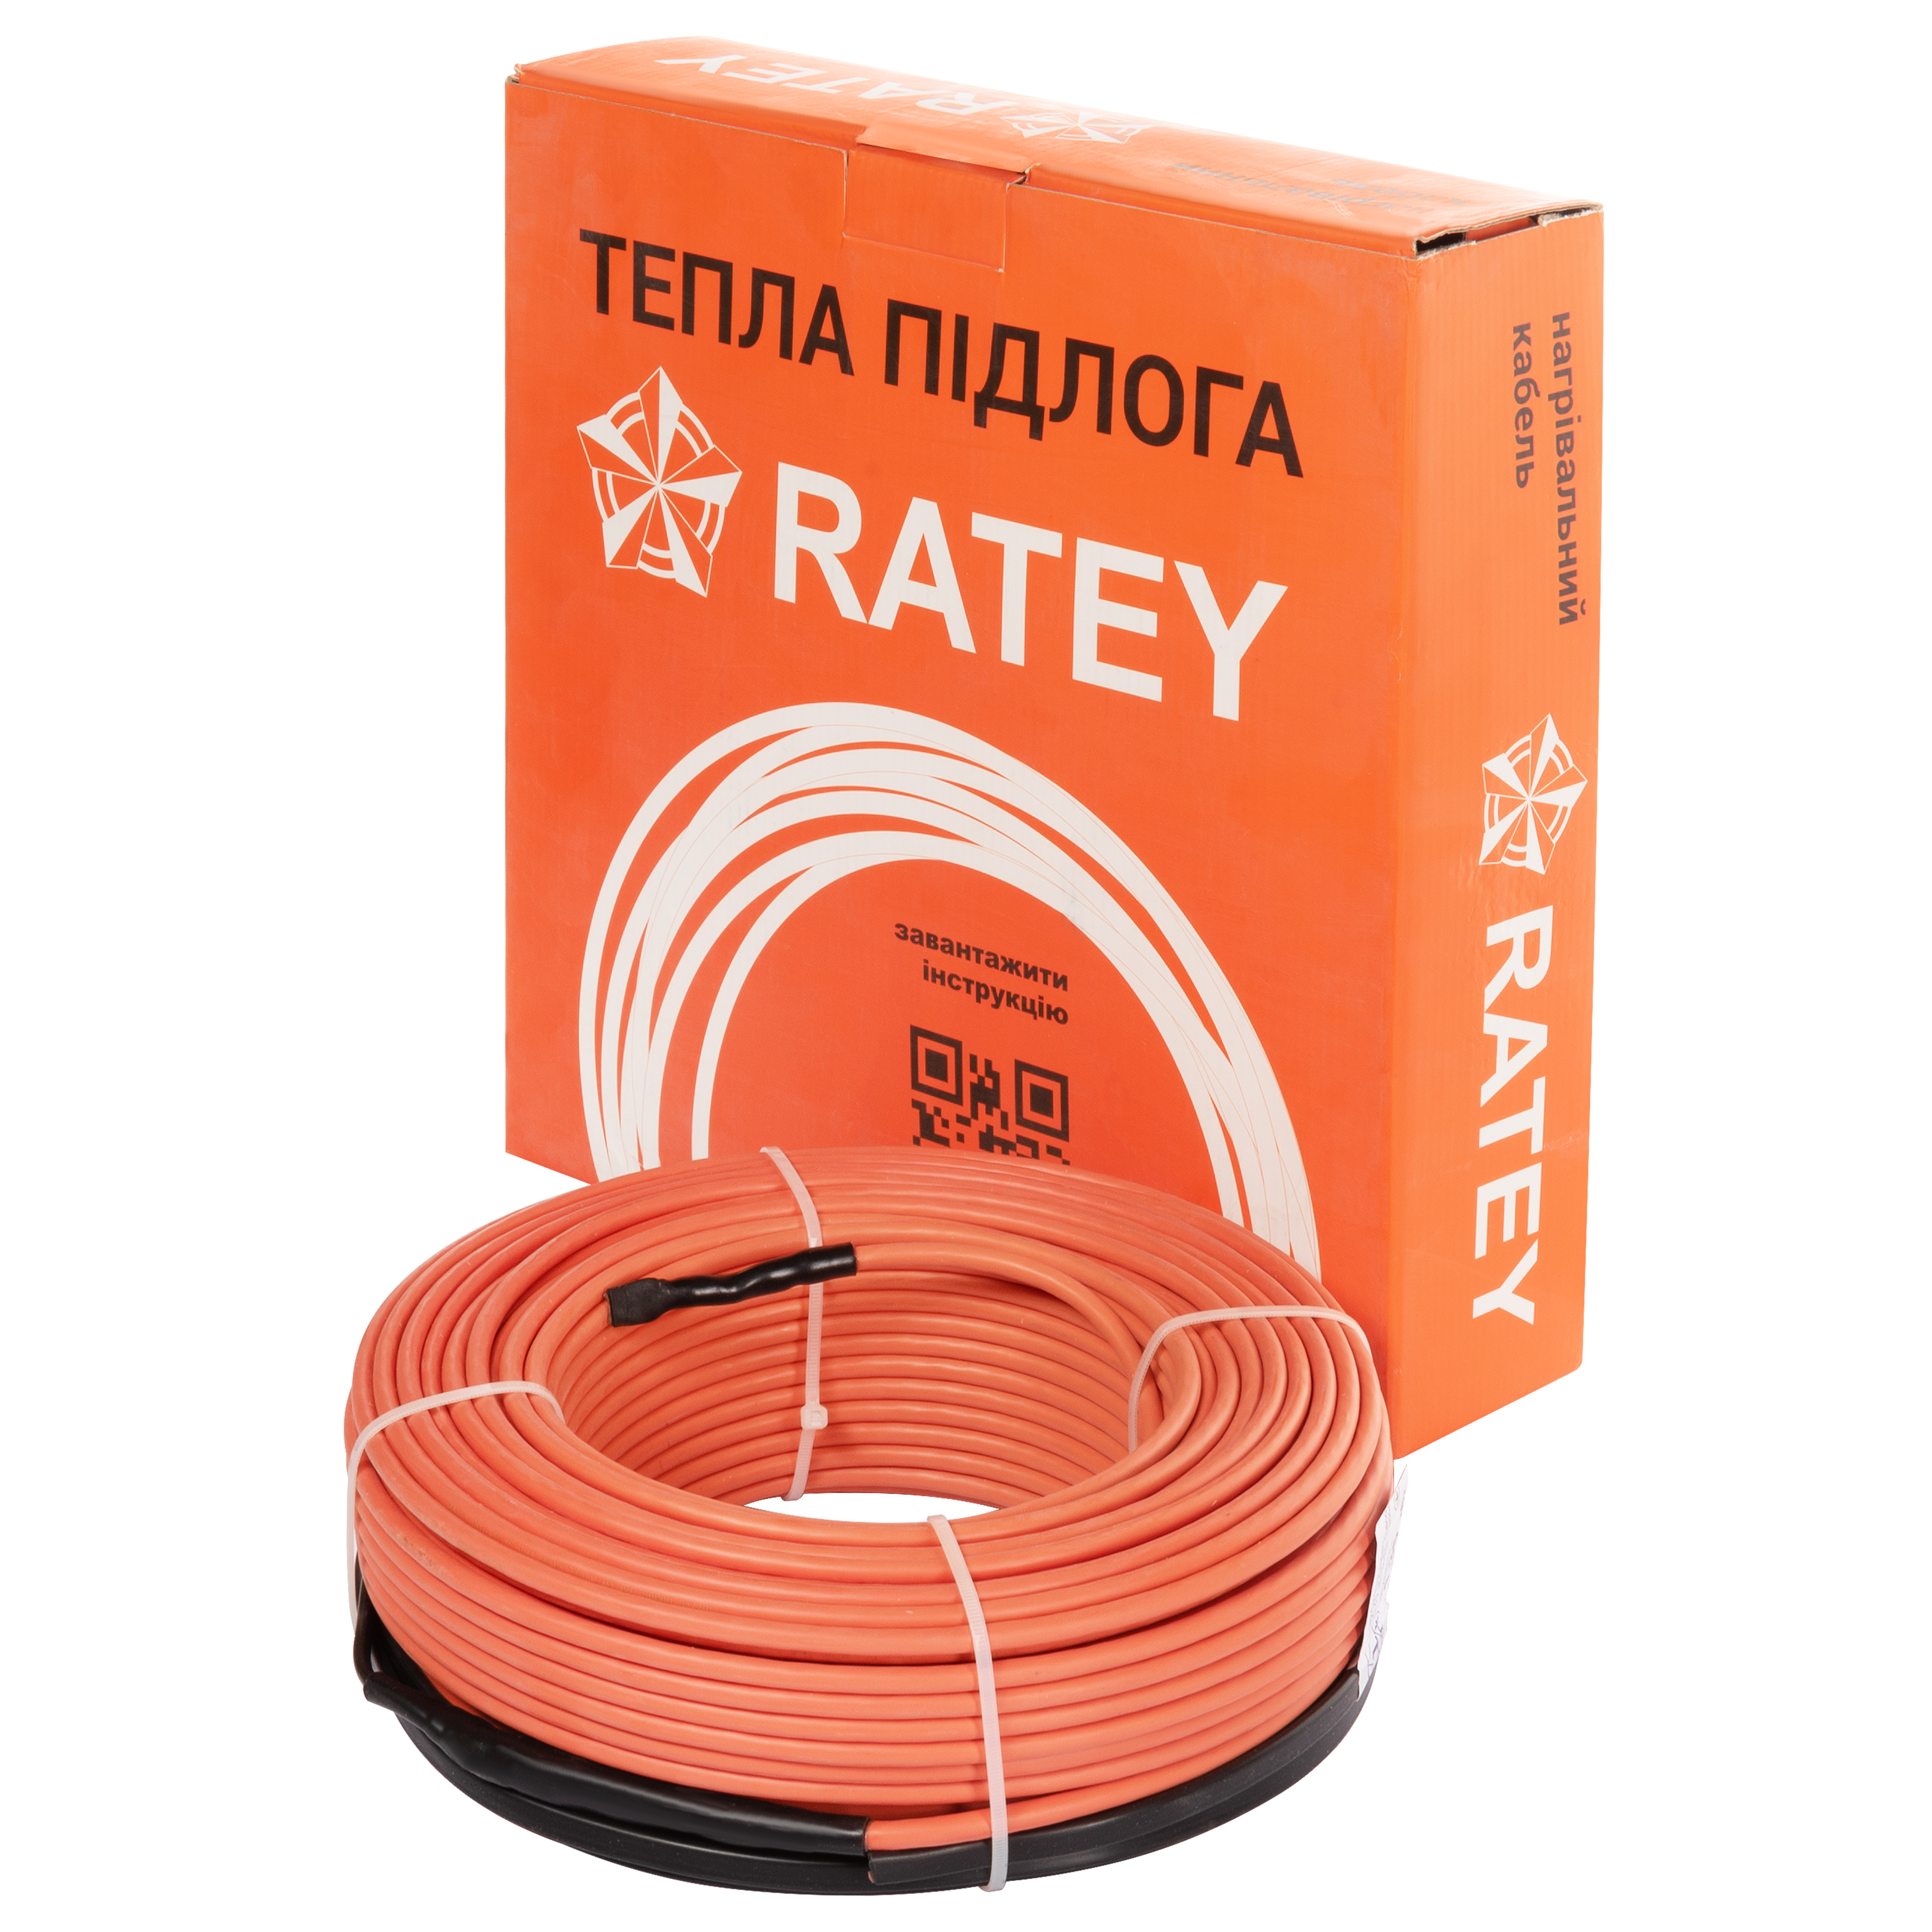 Купить теплый пол ratey электрический Ratey RD2 1.350 в Киеве